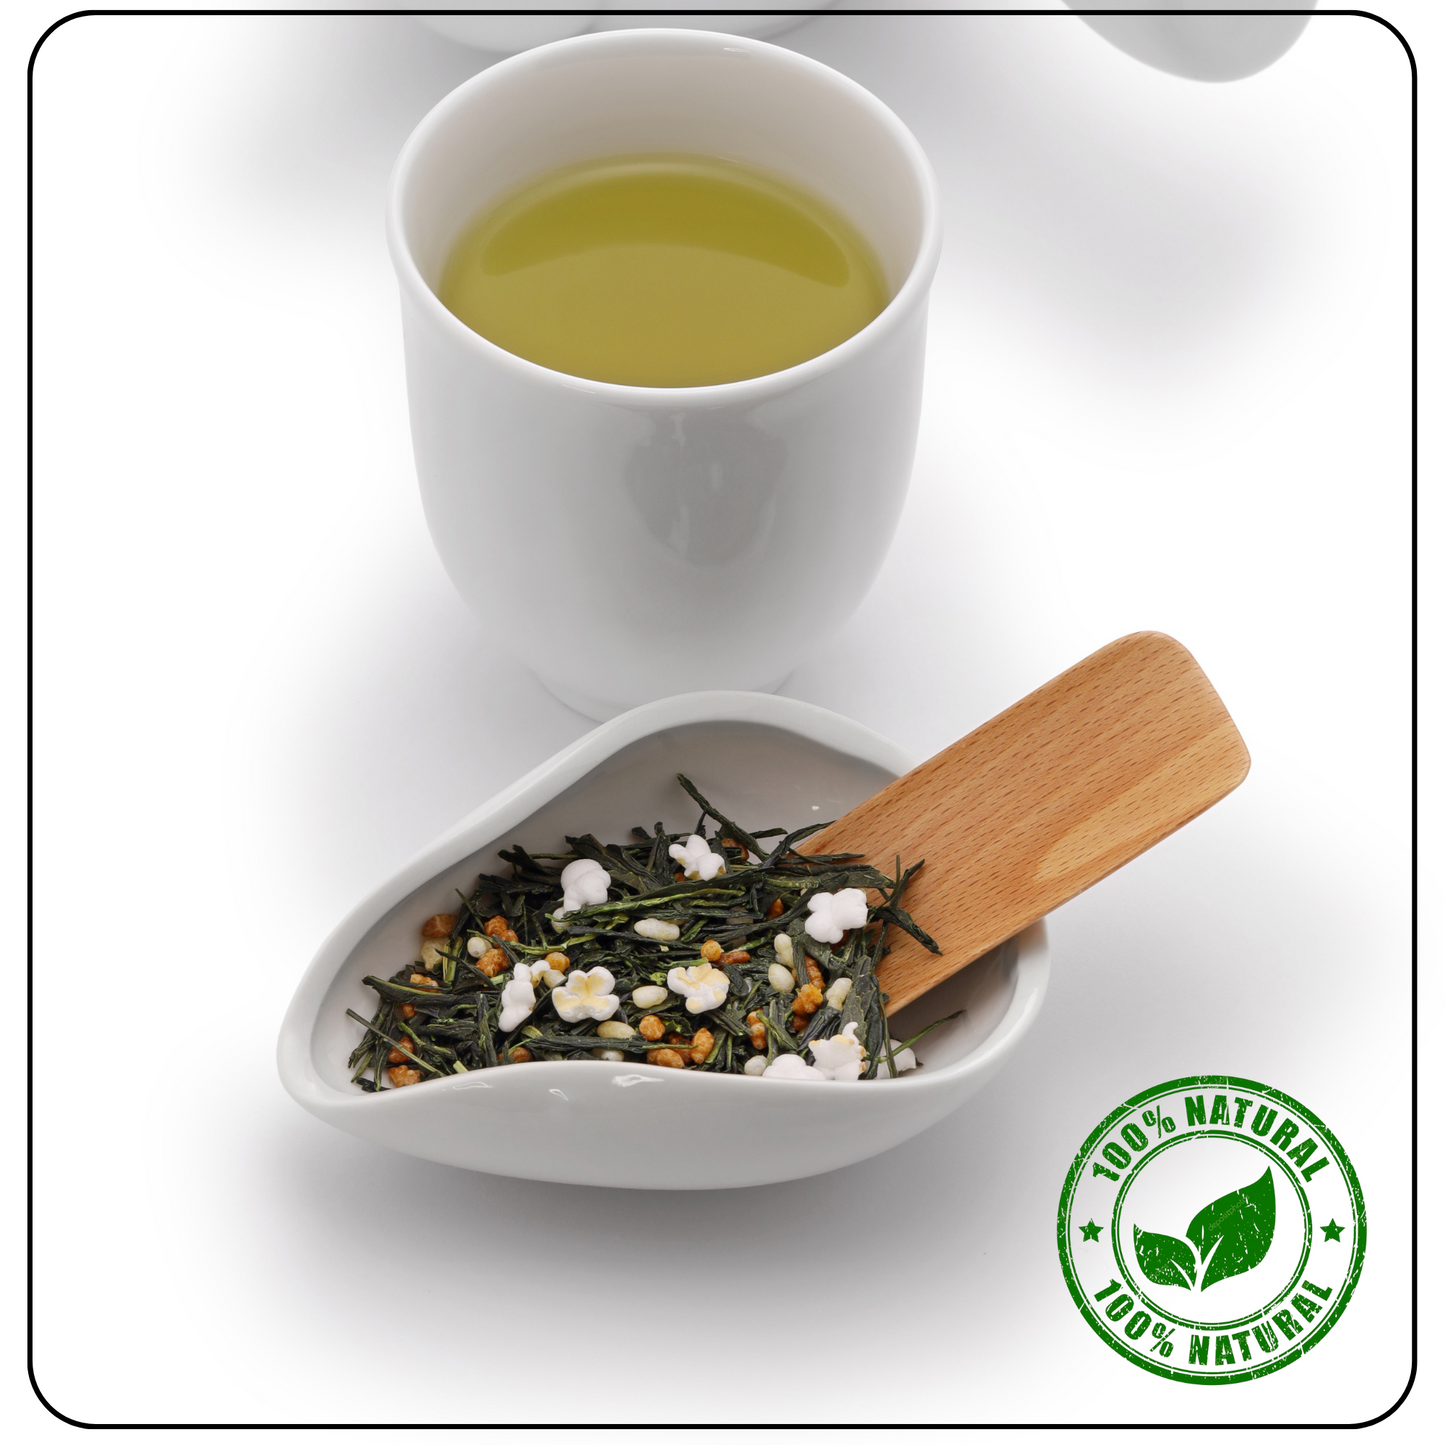 DETOX China Rice Genmaicha Tea - The Tea That Cleanses and Satisfies - Radhikas Fine Teas and Whatnots